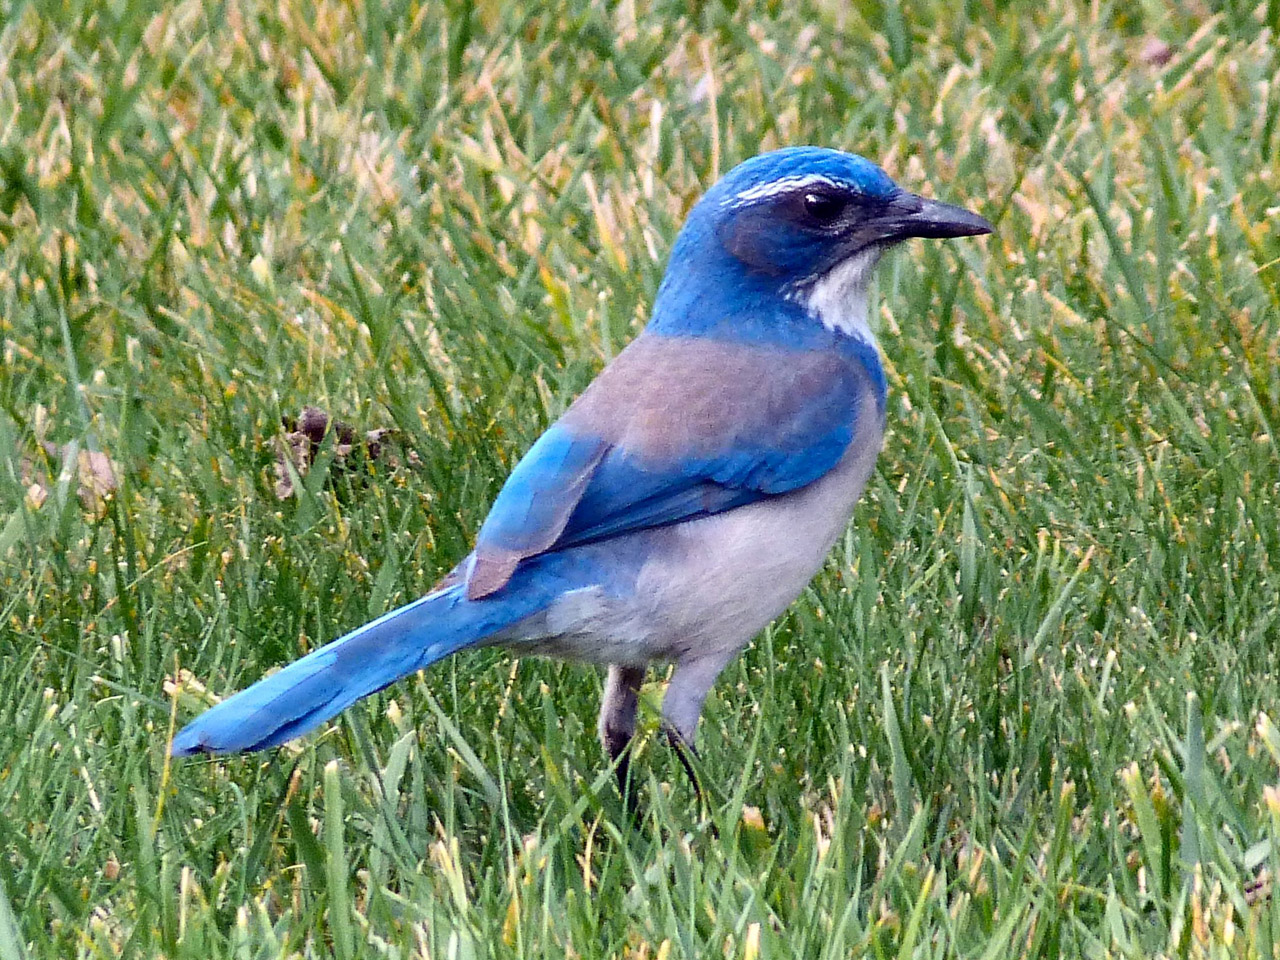 Bluebird on grass